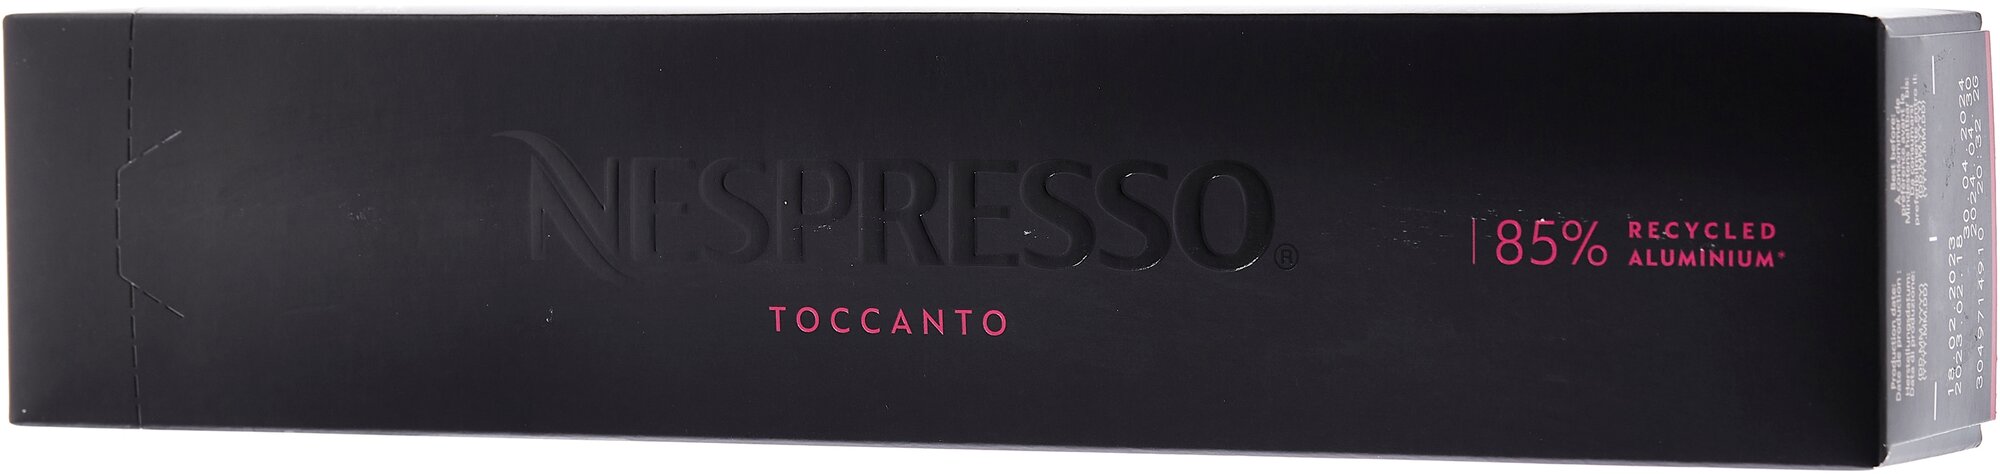 Кофе в капсулах Nespresso Toccanto, интенсивность 5, 10 порций, 10 кап. в  уп., — купить в интернет-магазине по низкой цене на Яндекс Маркете